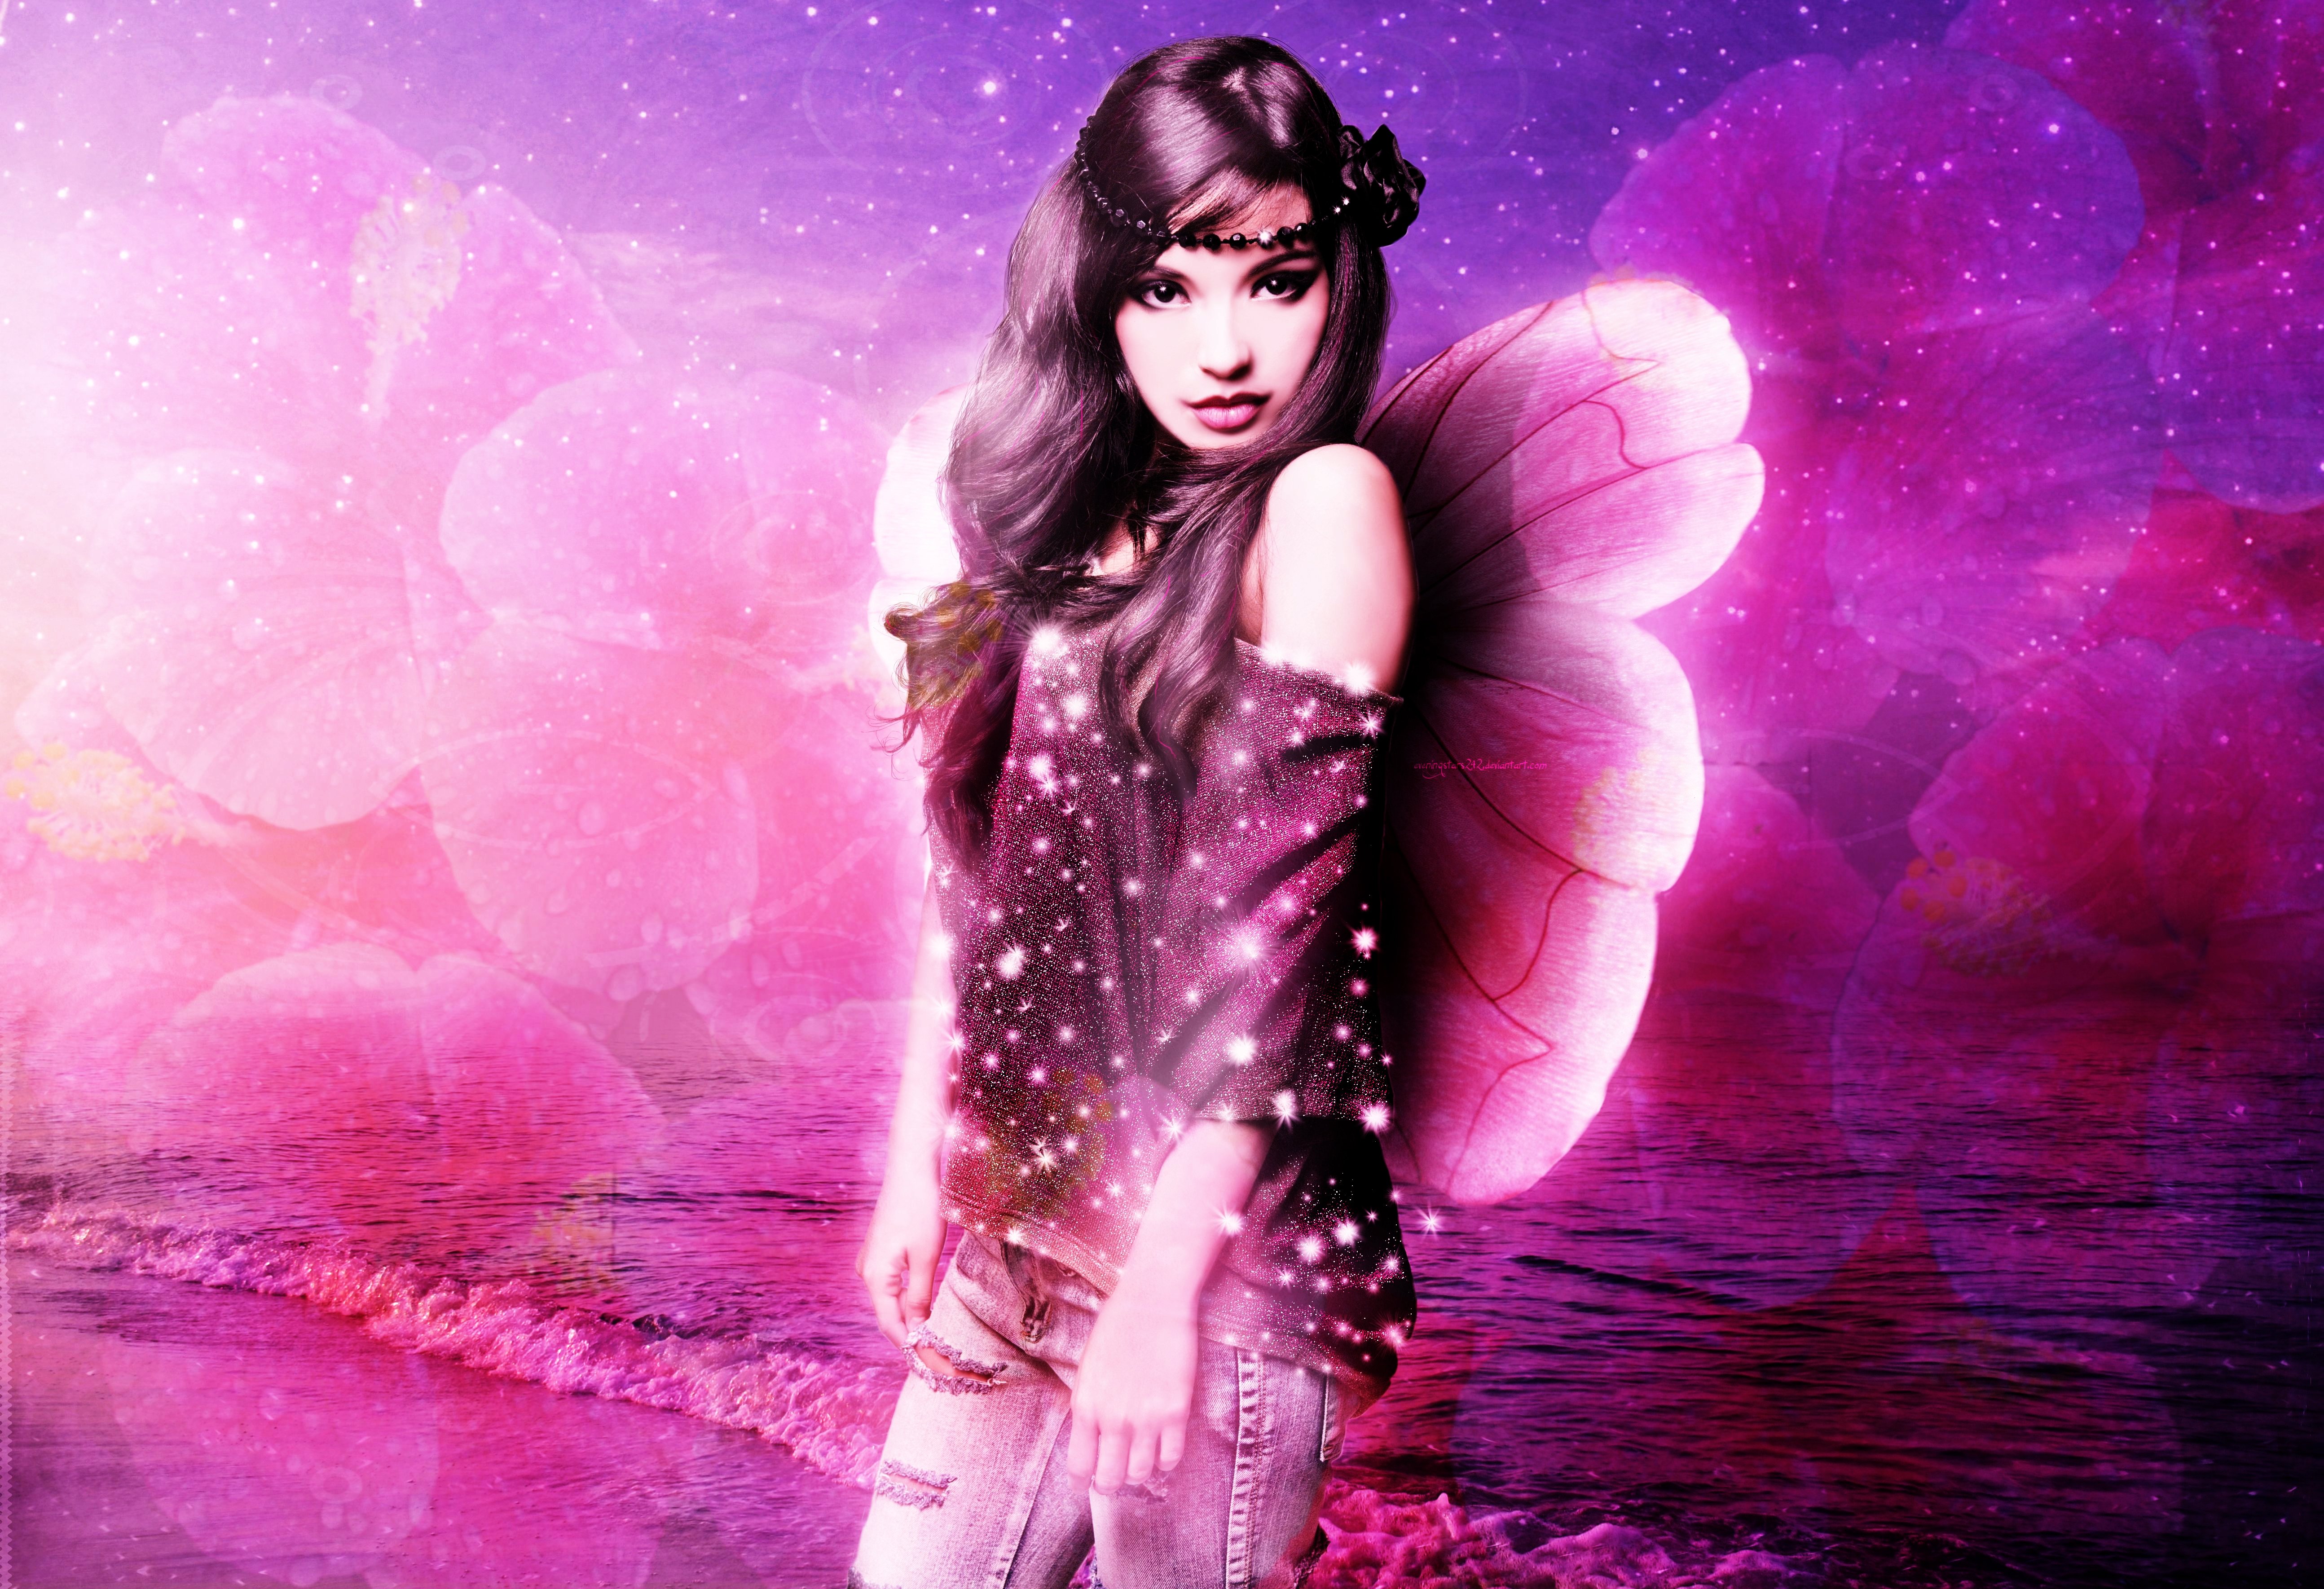 Fantasy Fairy 4k Ultra HD Wallpaper by eveningstars242